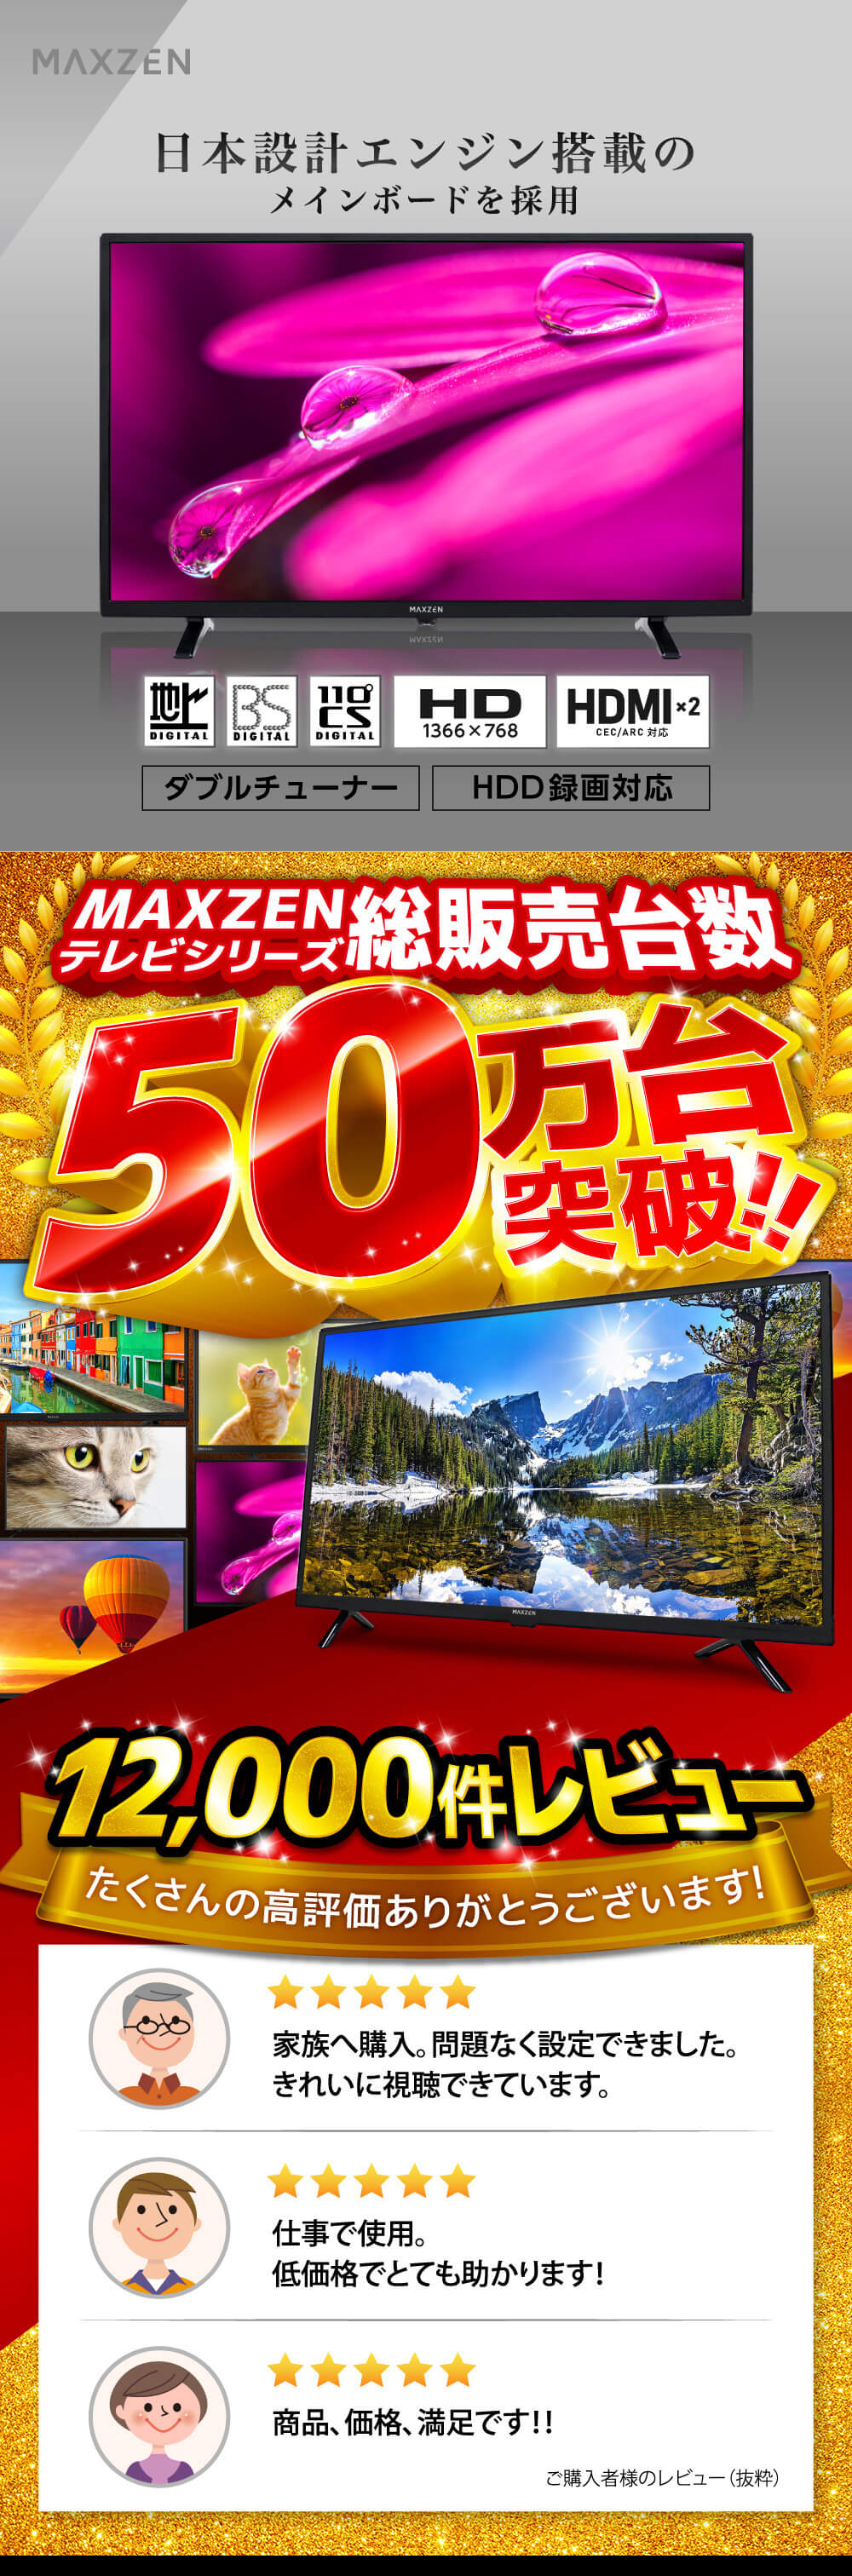 テレビ 32型 マクスゼン MAXZEN 32インチ 地上・BS・110度CSデジタル